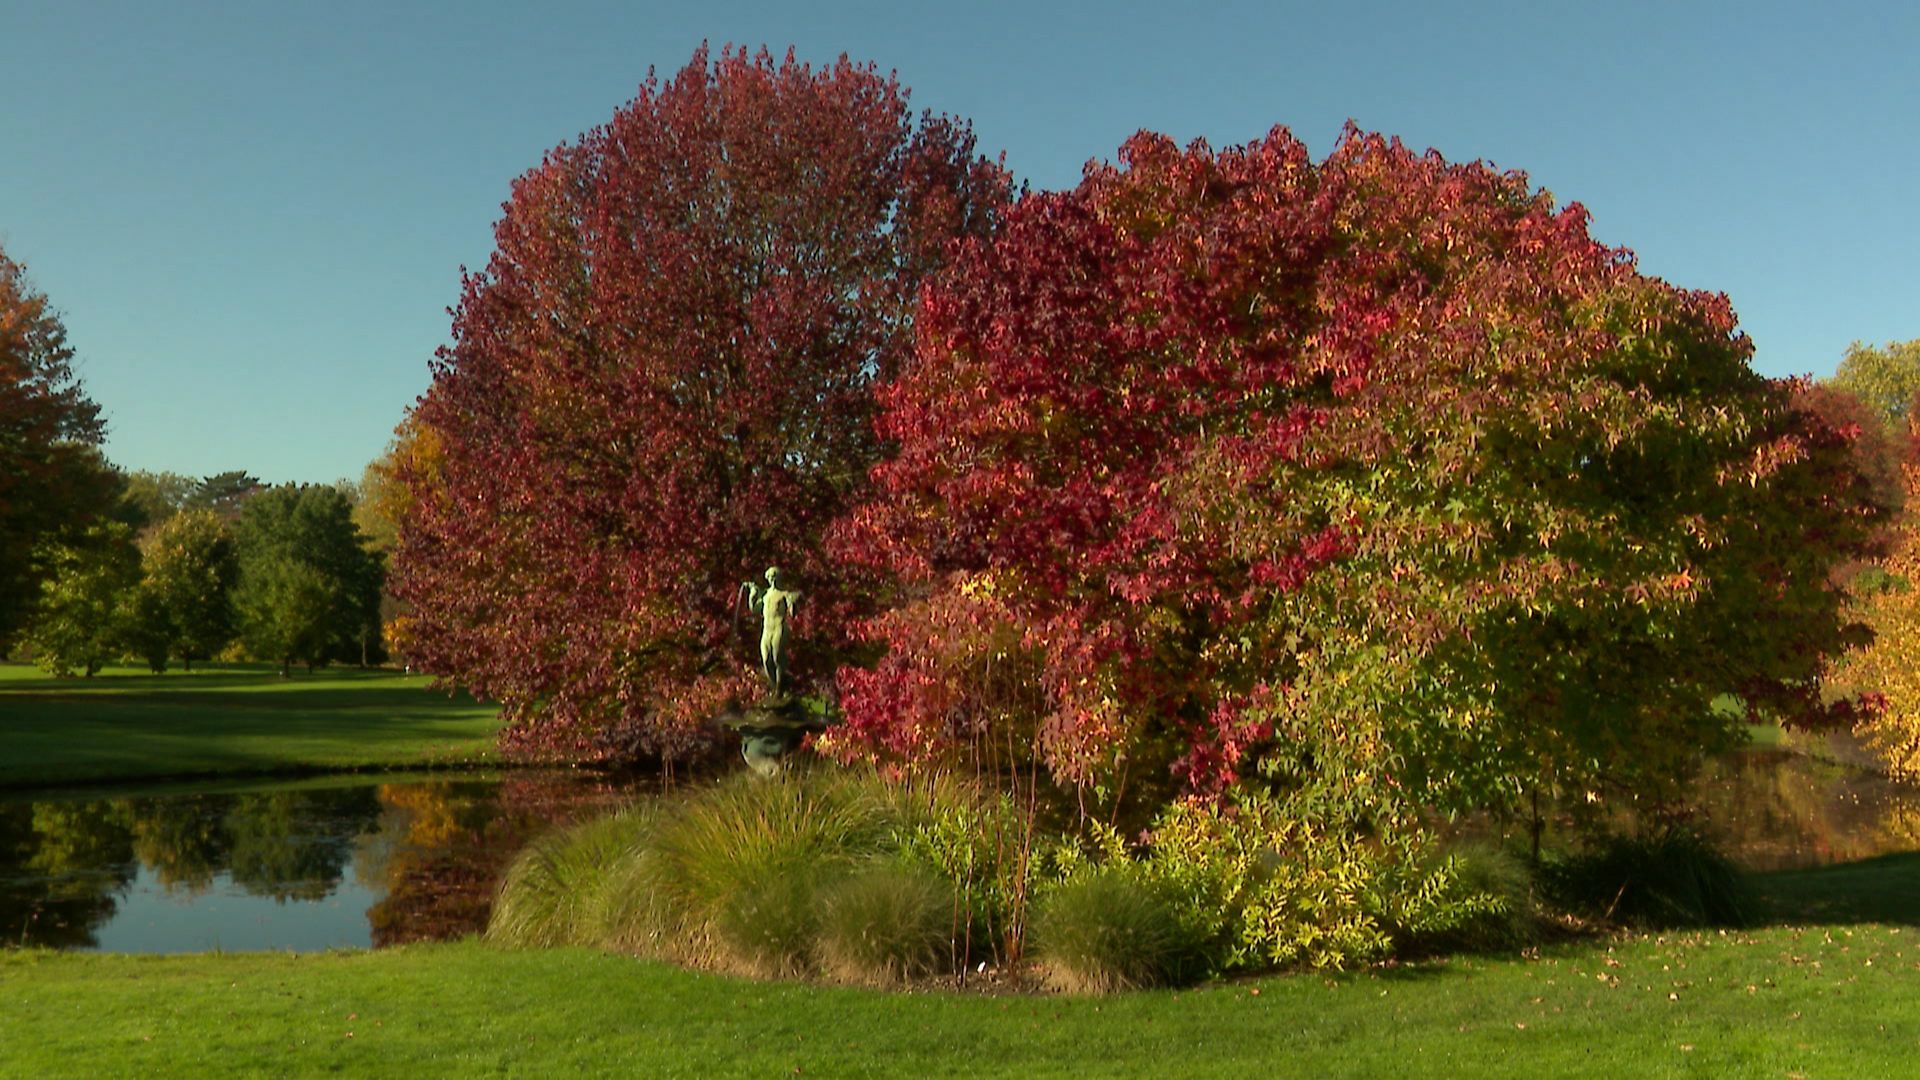 Arboretum de Wespelaar